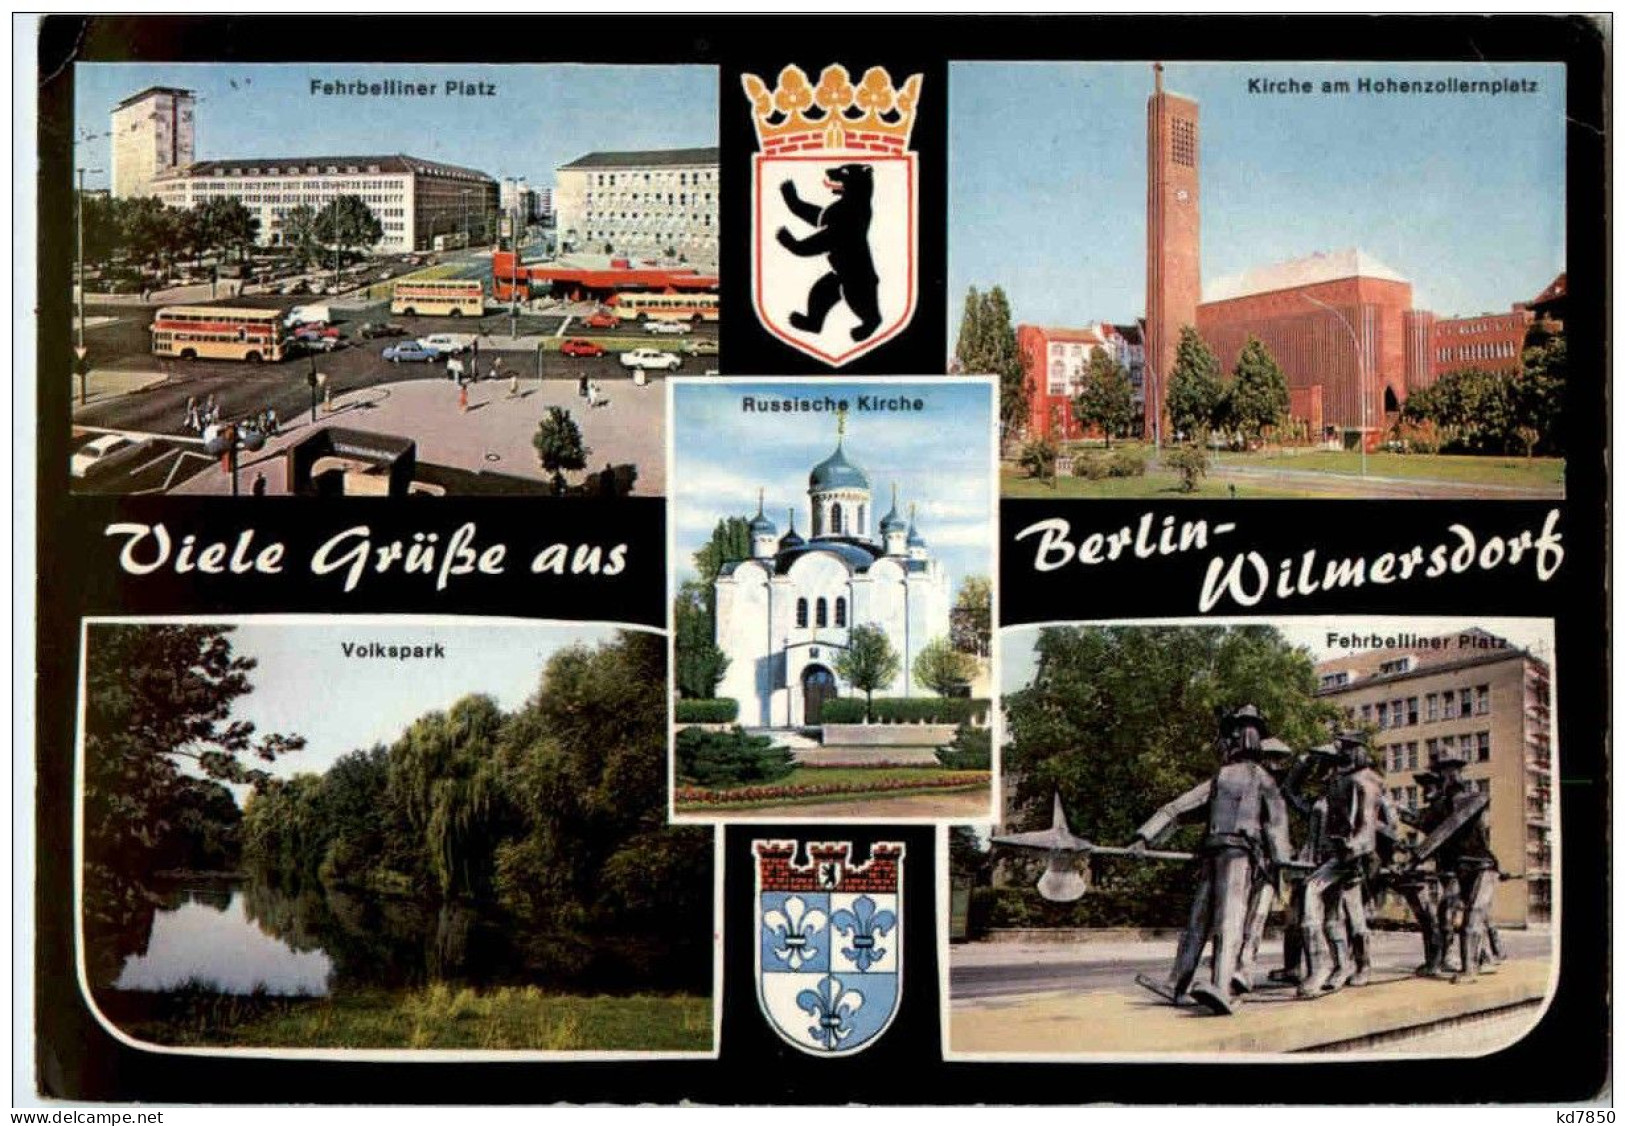 Gruss Aus Berlin Wilmersdorf - Wilmersdorf